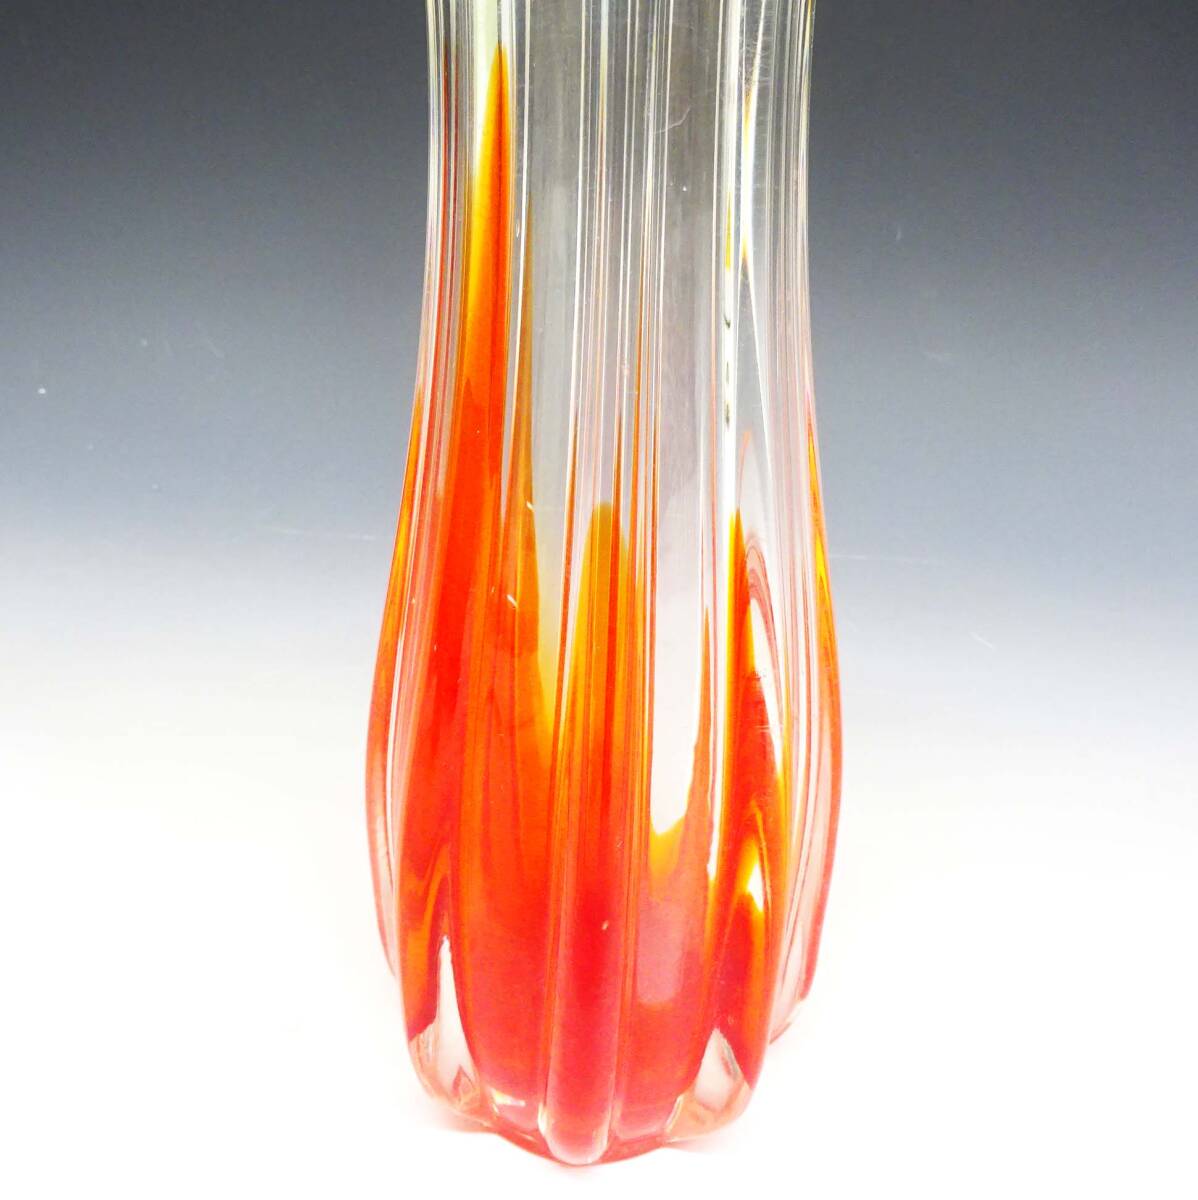 ◆(TH) 昭和レトロ ガラス製 花瓶 高さ 約27cm 口径 約5cm クリア レッド 赤 フラワーベース 変形 花びん 花器 インテリア雑貨_画像3